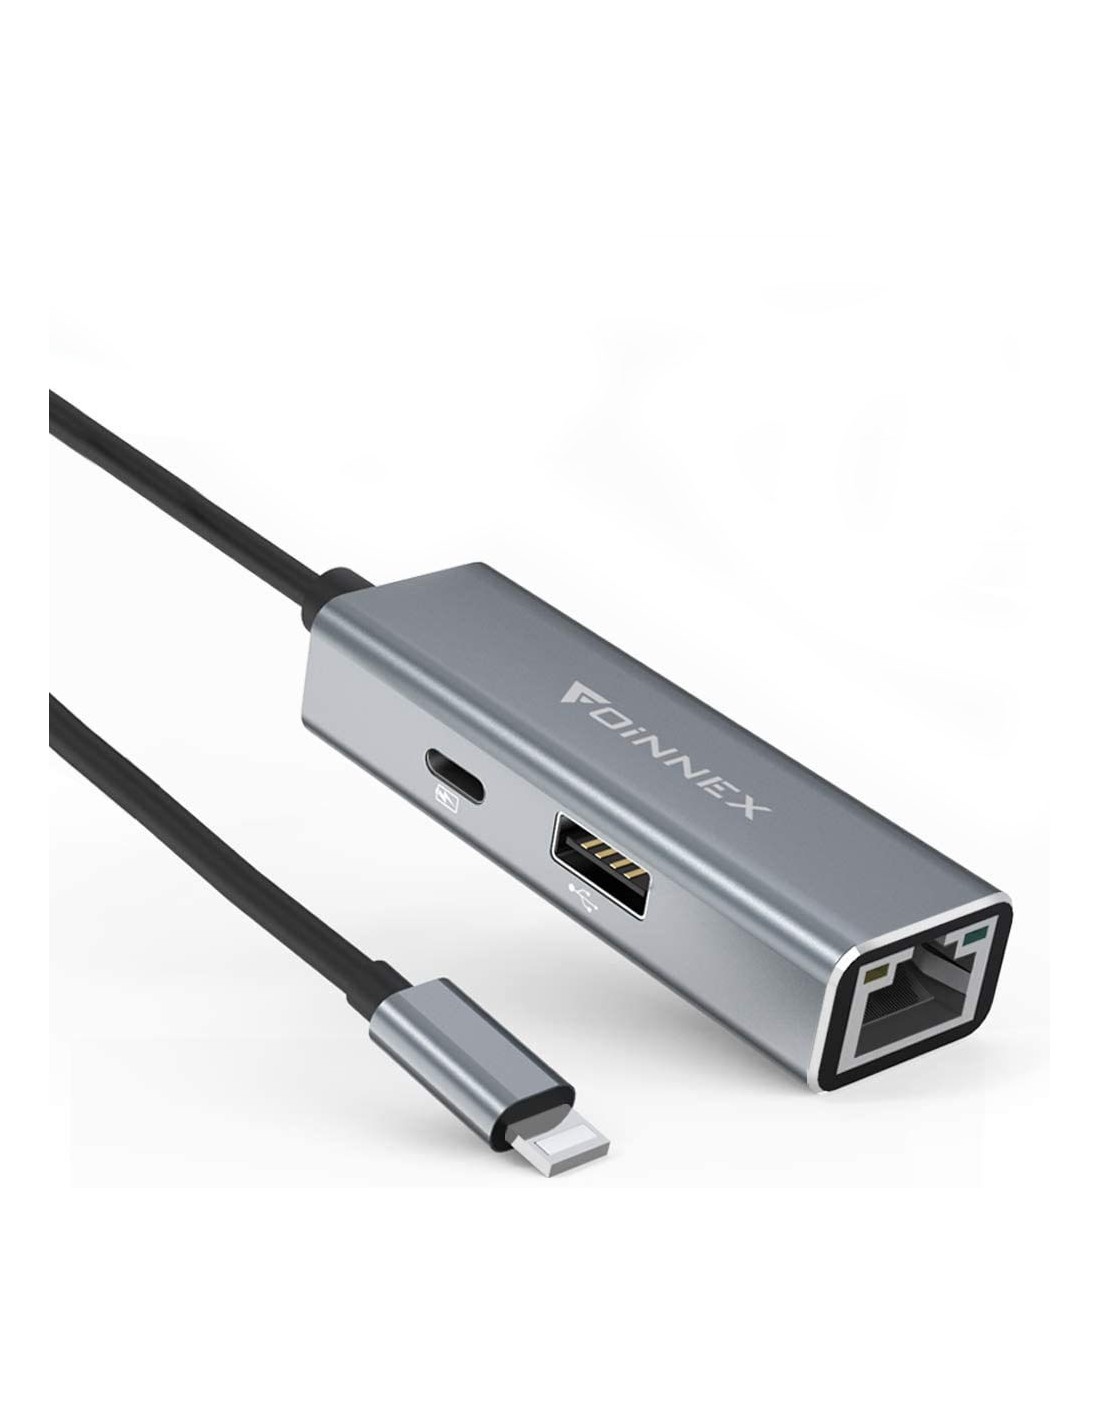 Adaptateur Lightning vers Ethernet RJ45 avec charge pour iPhone